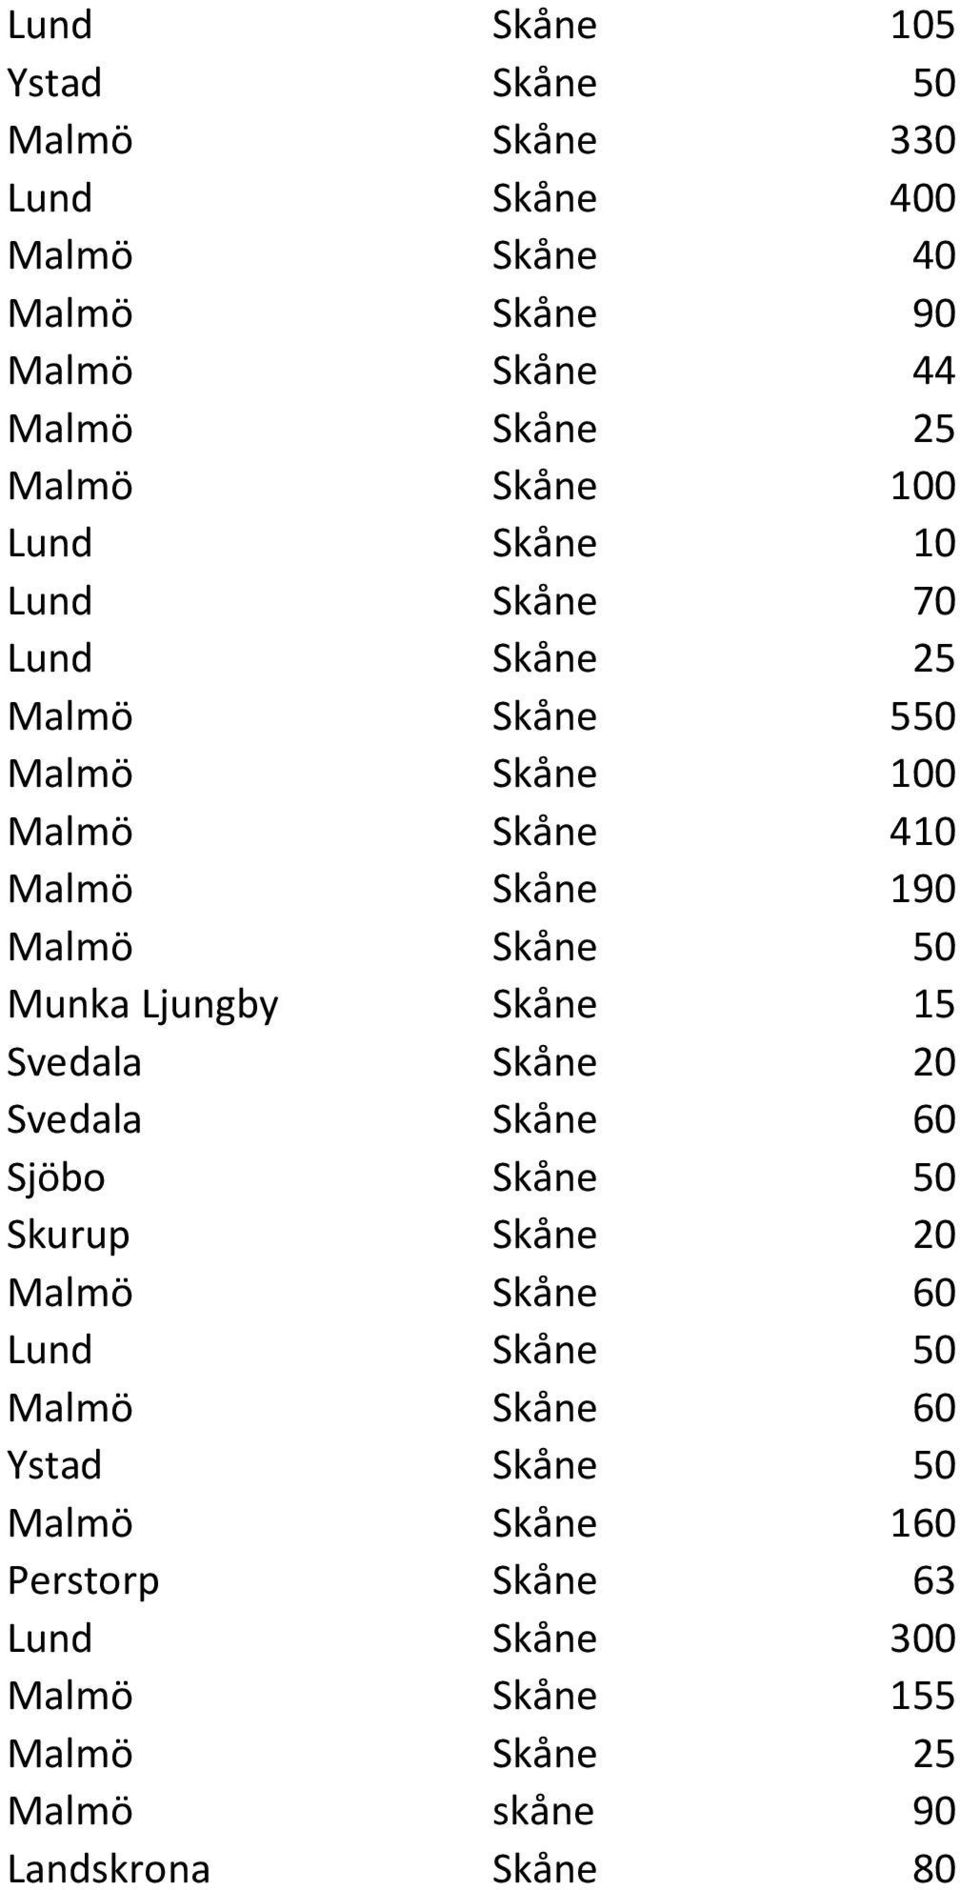 50 Munka Ljungby Skåne 15 Svedala Skåne 20 Svedala Skåne 60 Sjöbo Skåne 50 Skurup Skåne 20 Malmö Skåne 60 Lund Skåne 50 Malmö